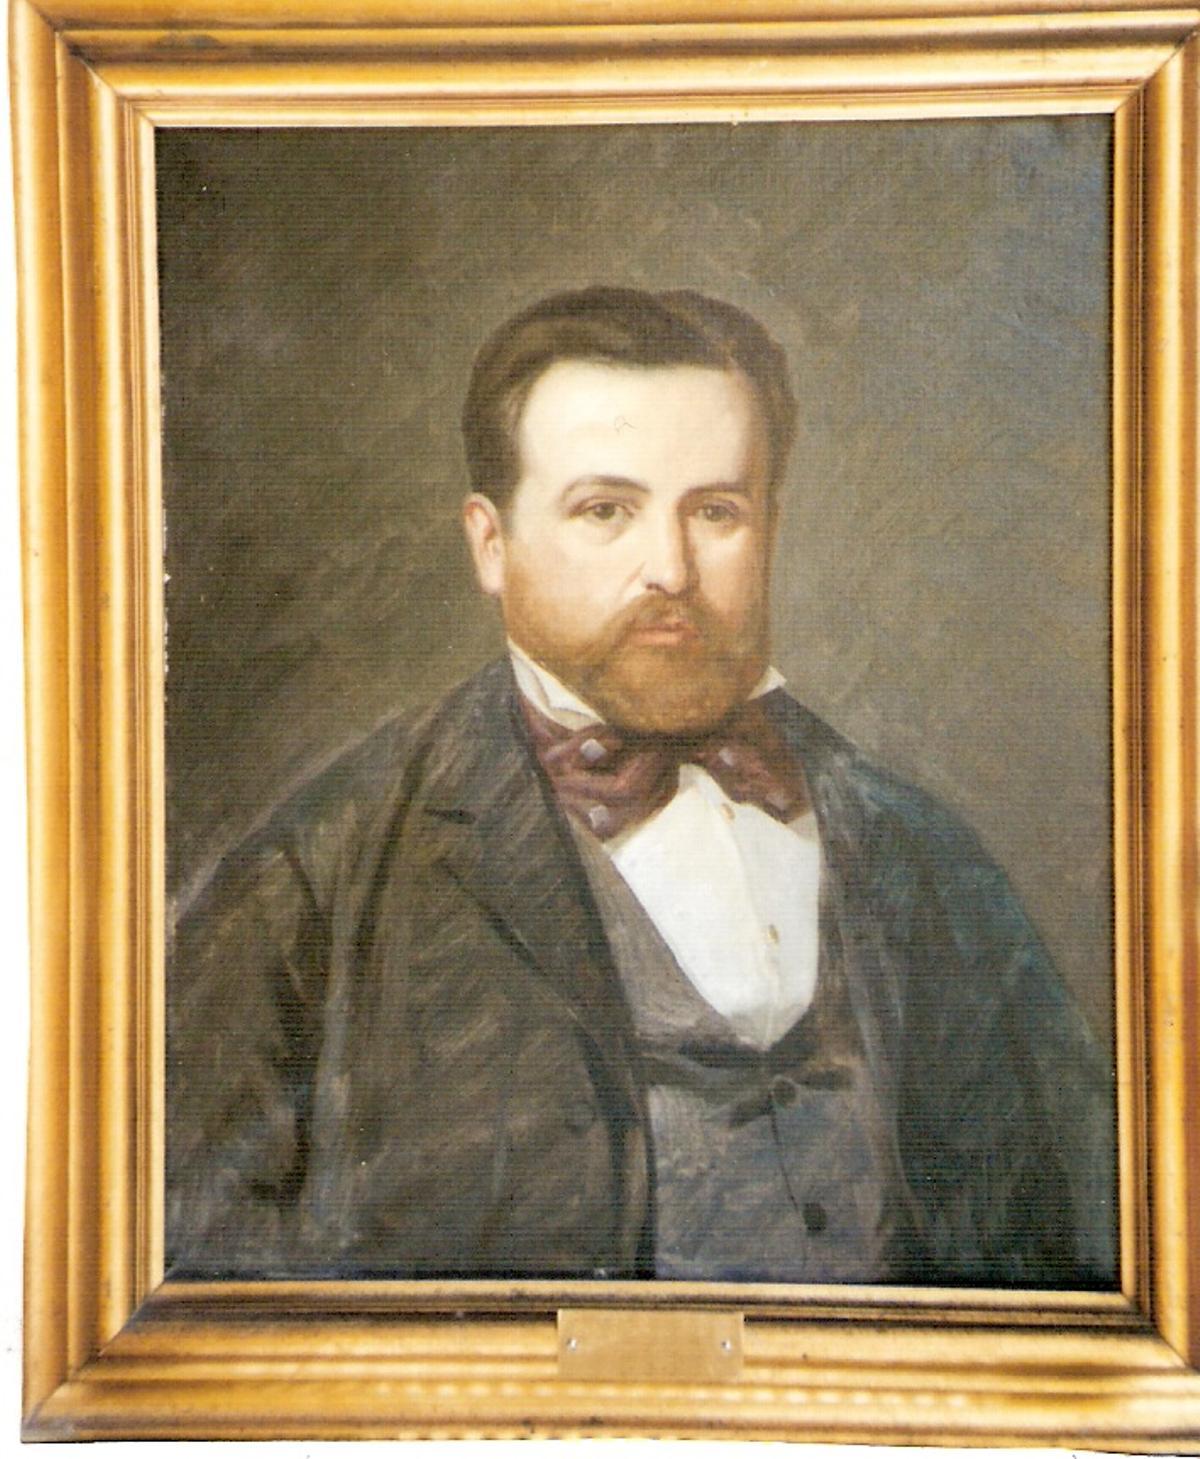 Retrato de Antonio Campos Garín, marqués de Iznate en 1880